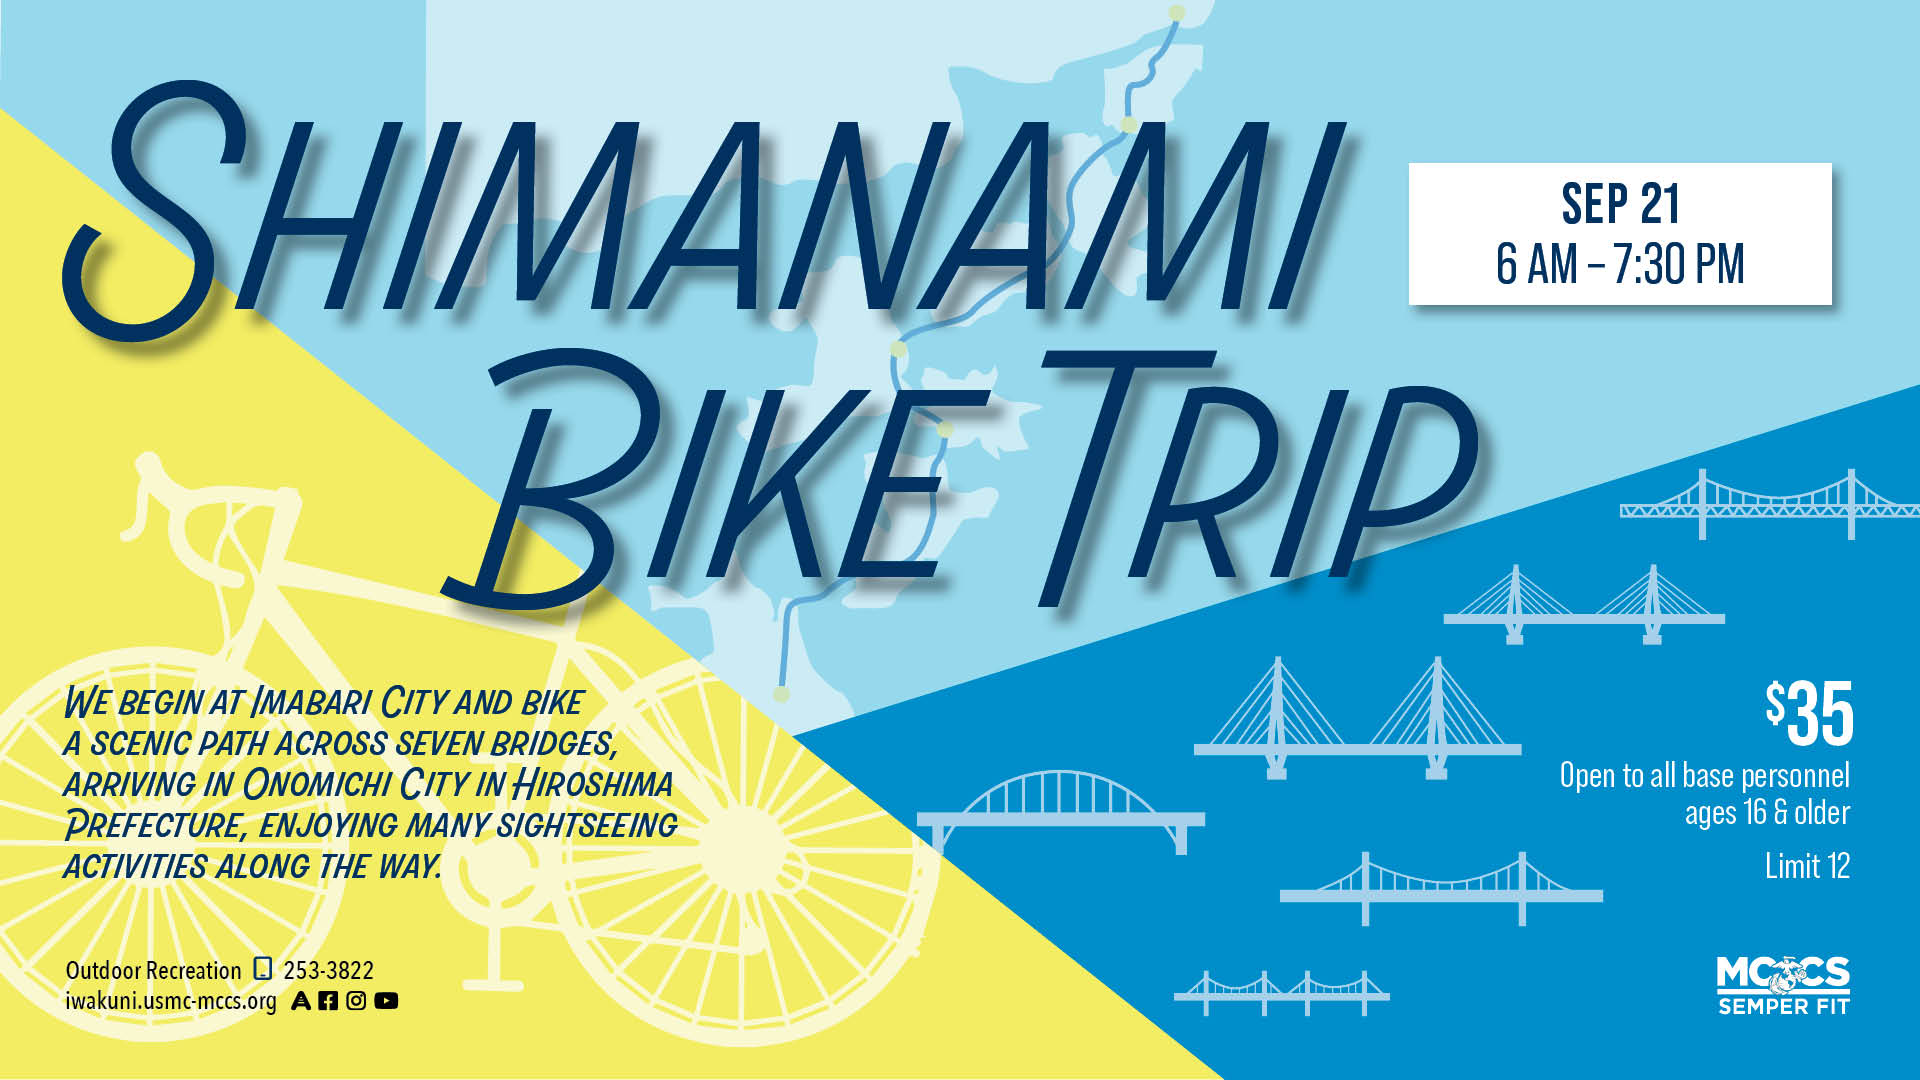 Shimanami Bike Trip